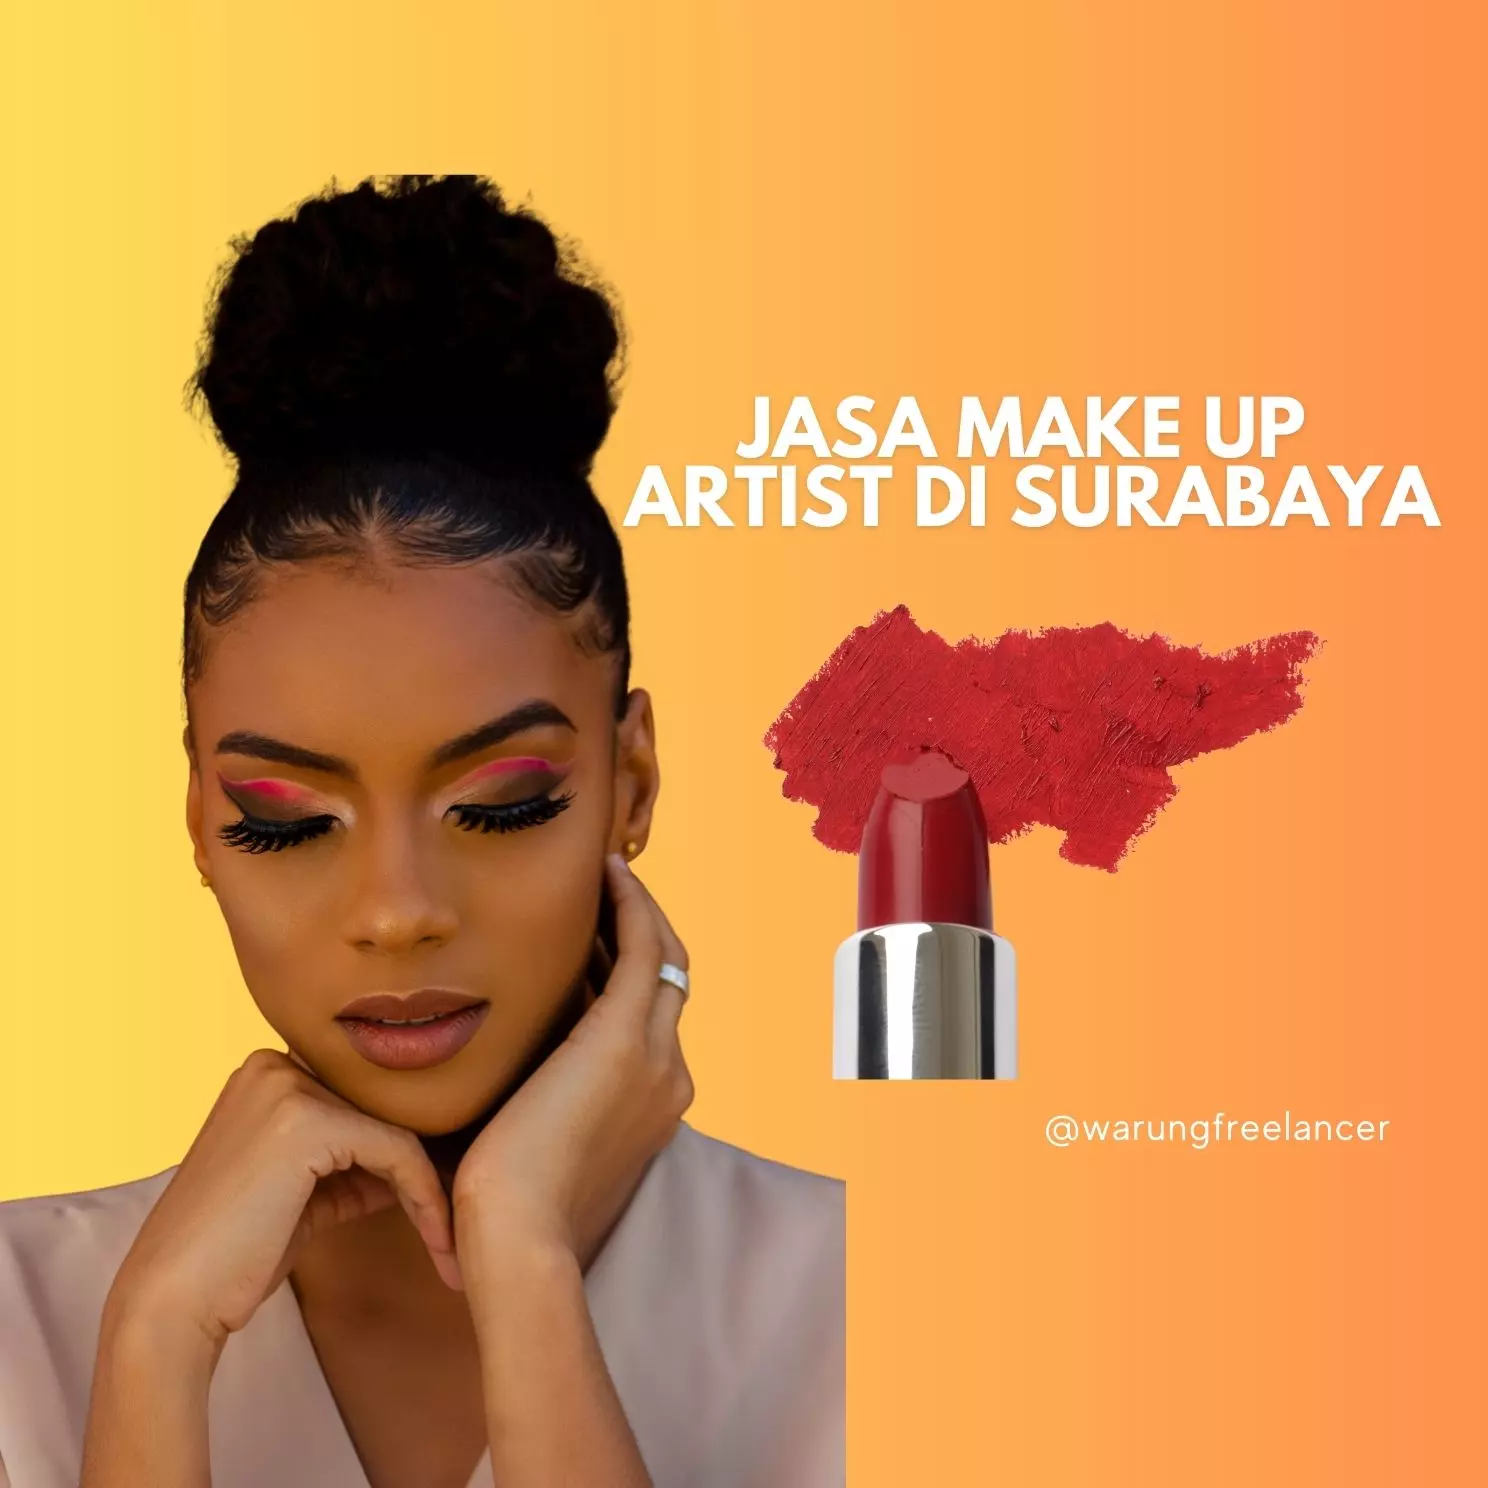 Jasa Make Up Artist di Surabaya